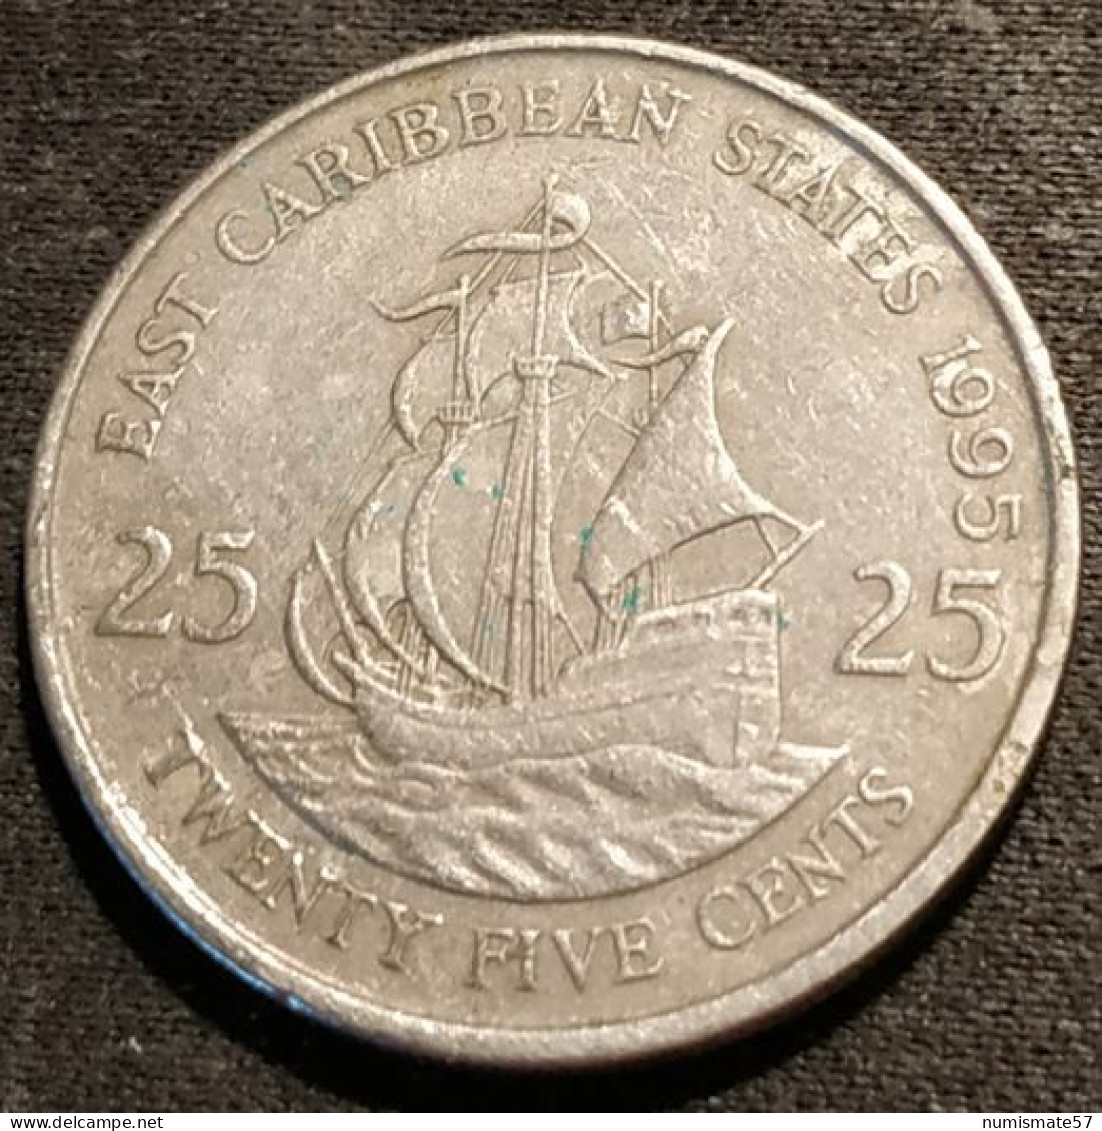 EAST CARIBBEAN STATES - 25 CENTS 1995 - Elizabeth II - 2e Effigie - KM 14 - ( Caraibes ) - Oost-Caribische Staten